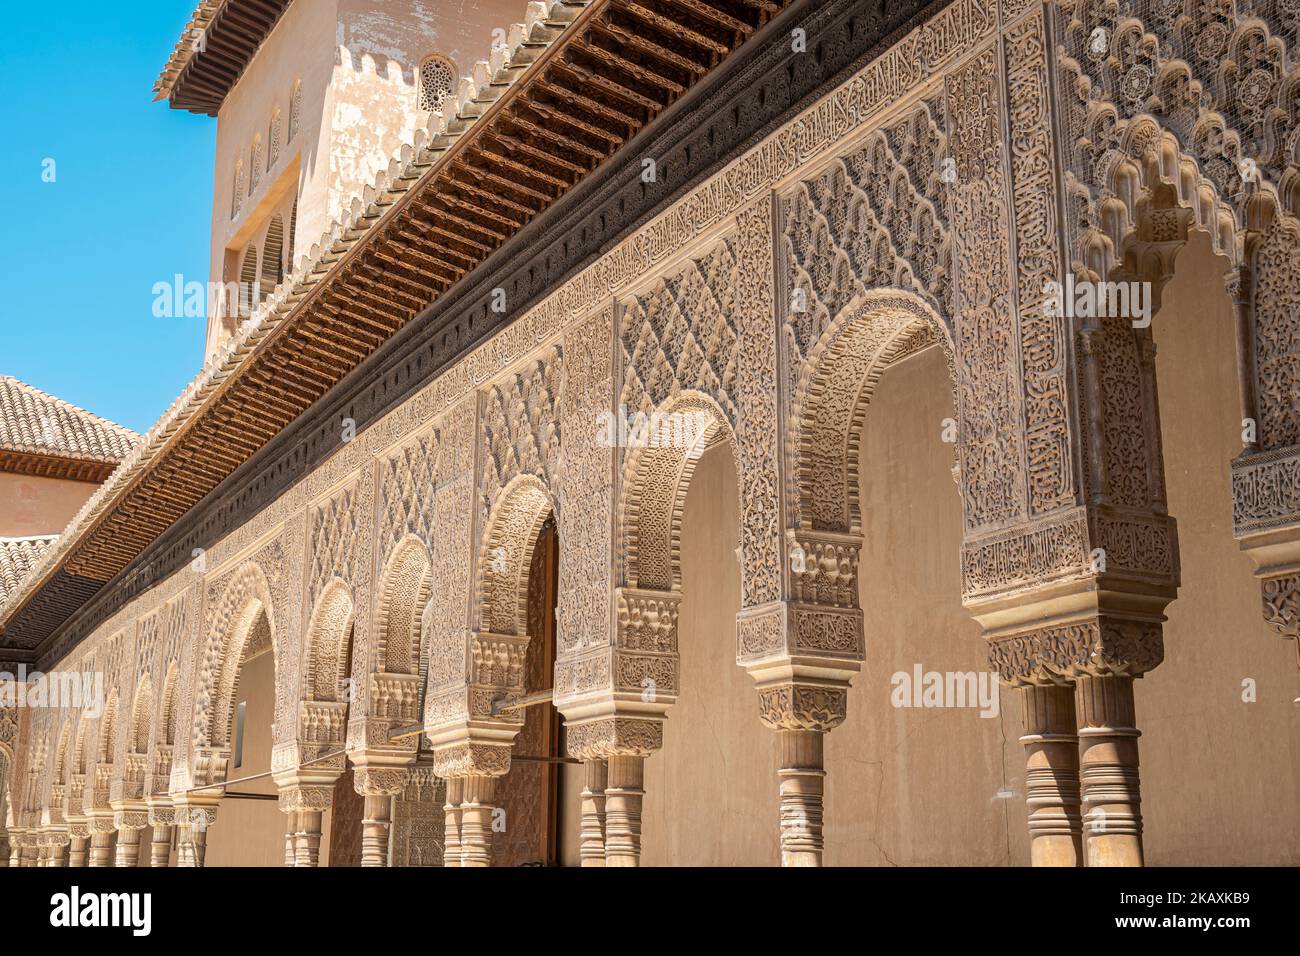 Detalle columnas y arcos ornamentados con arte Ã¡rabe nazarÃ en el patio de los leones de la Alhambra de Granada, EspaÃ±a Stock Photo